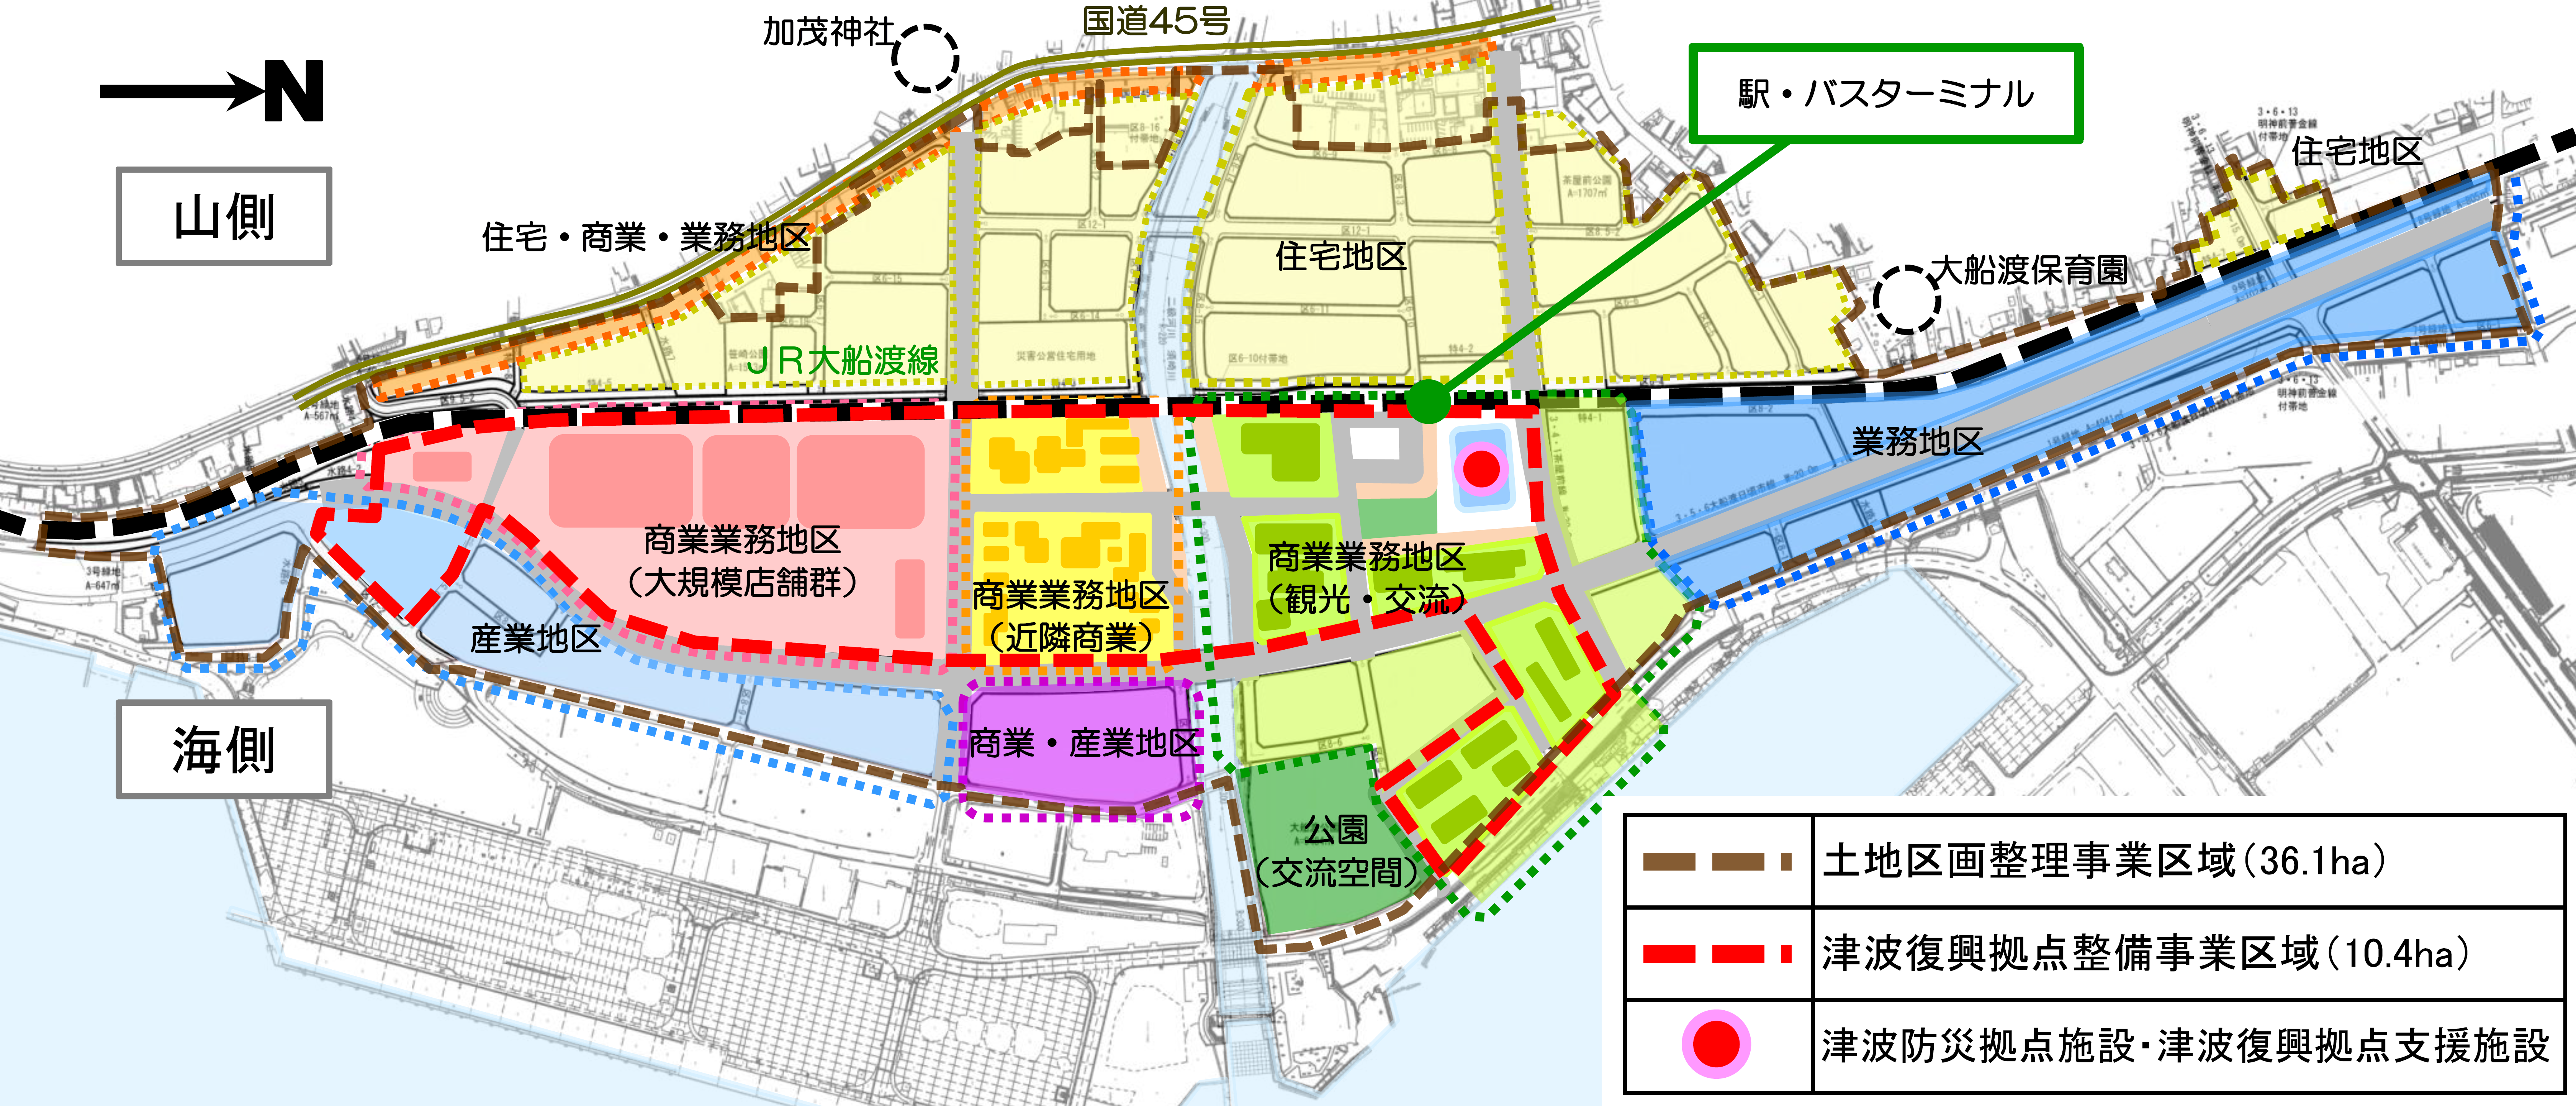 大船渡駅周辺地区の土地利用計画図の画像